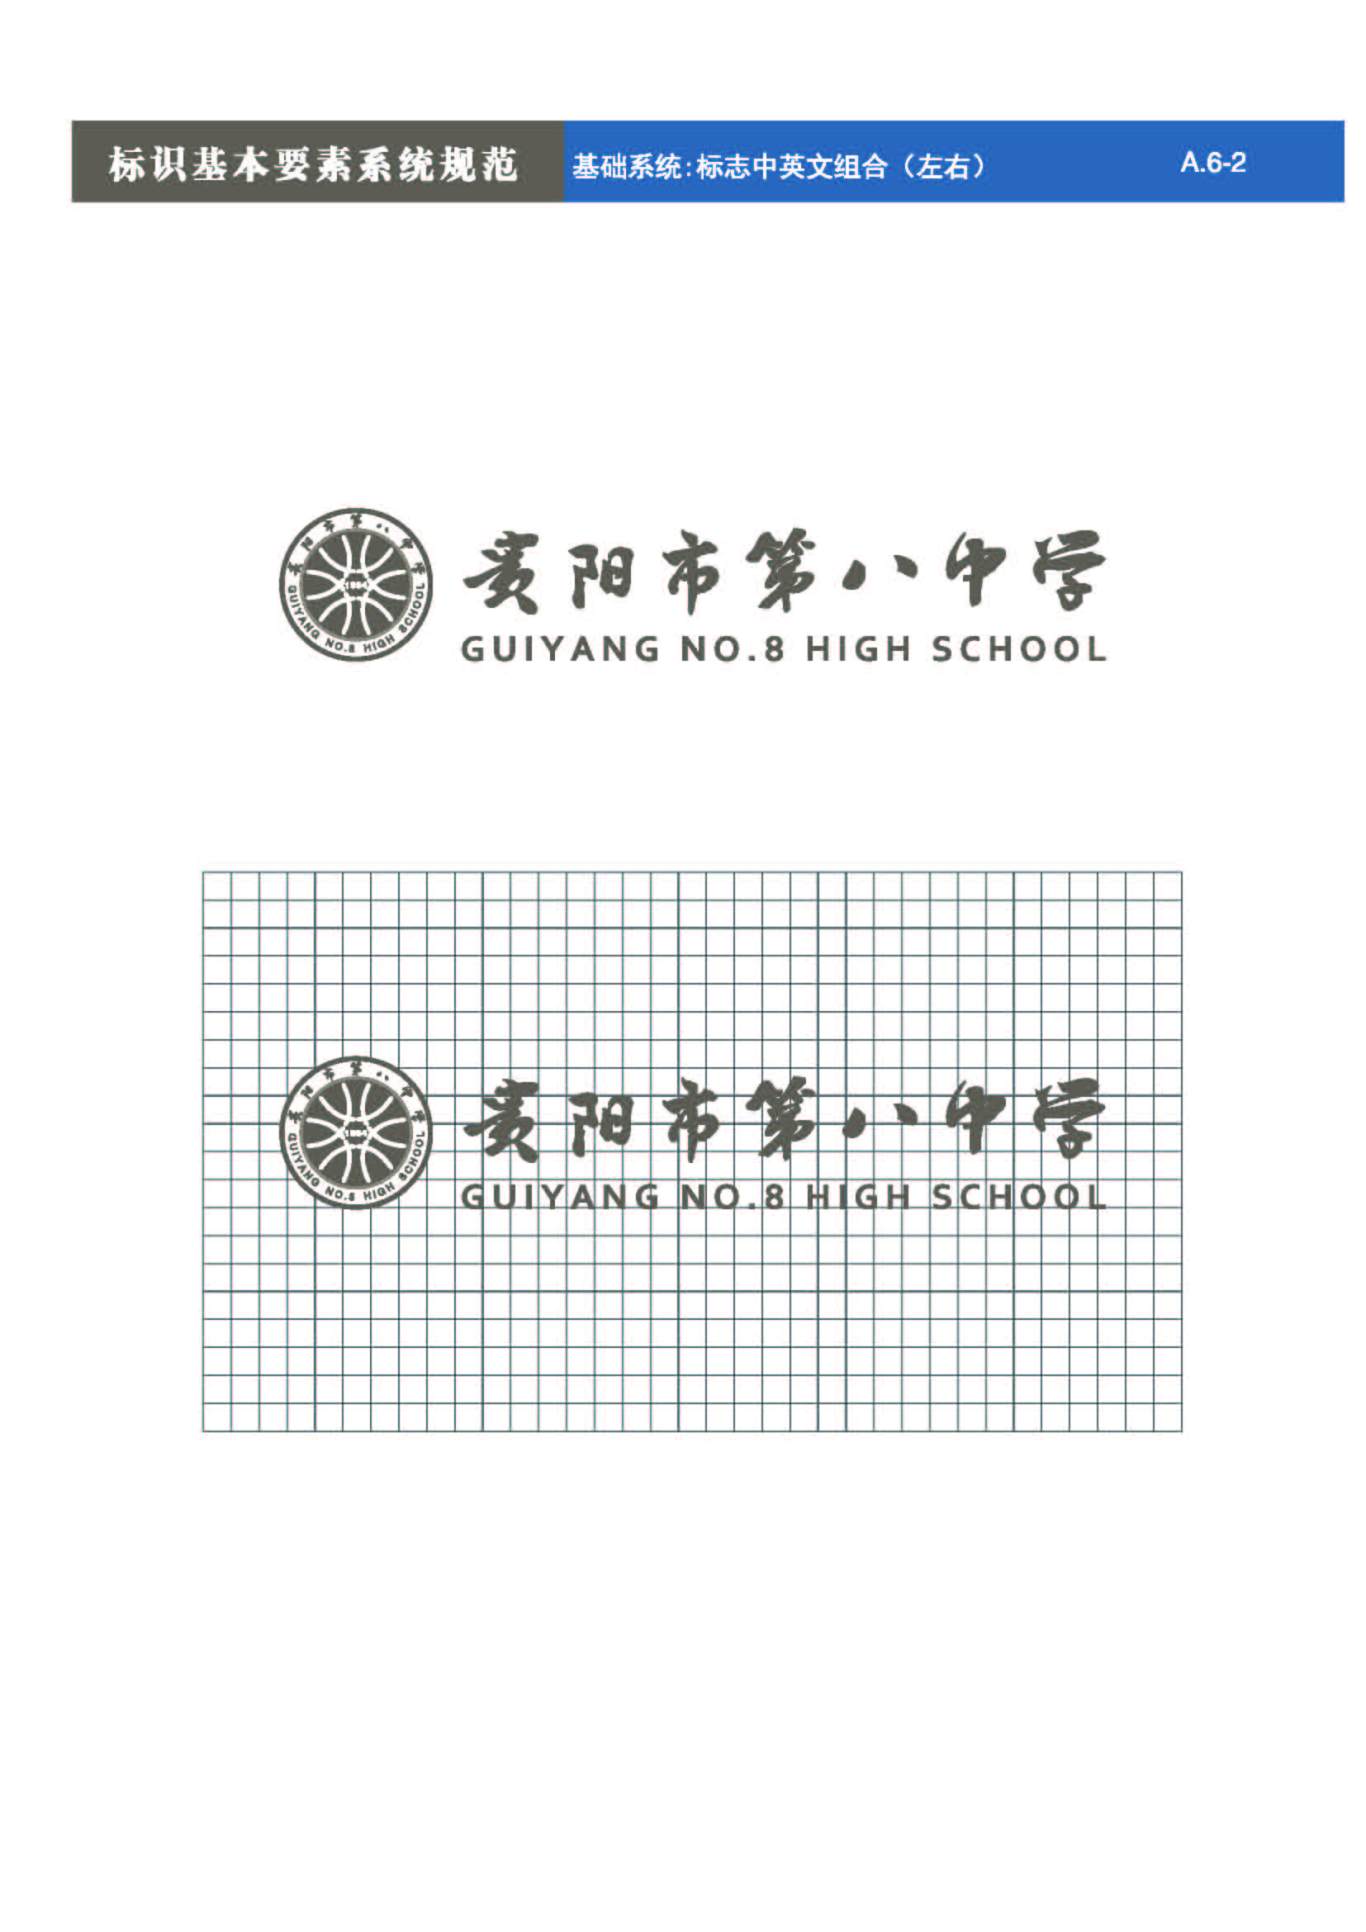 貴陽第八中學Logo、VIS設計圖18